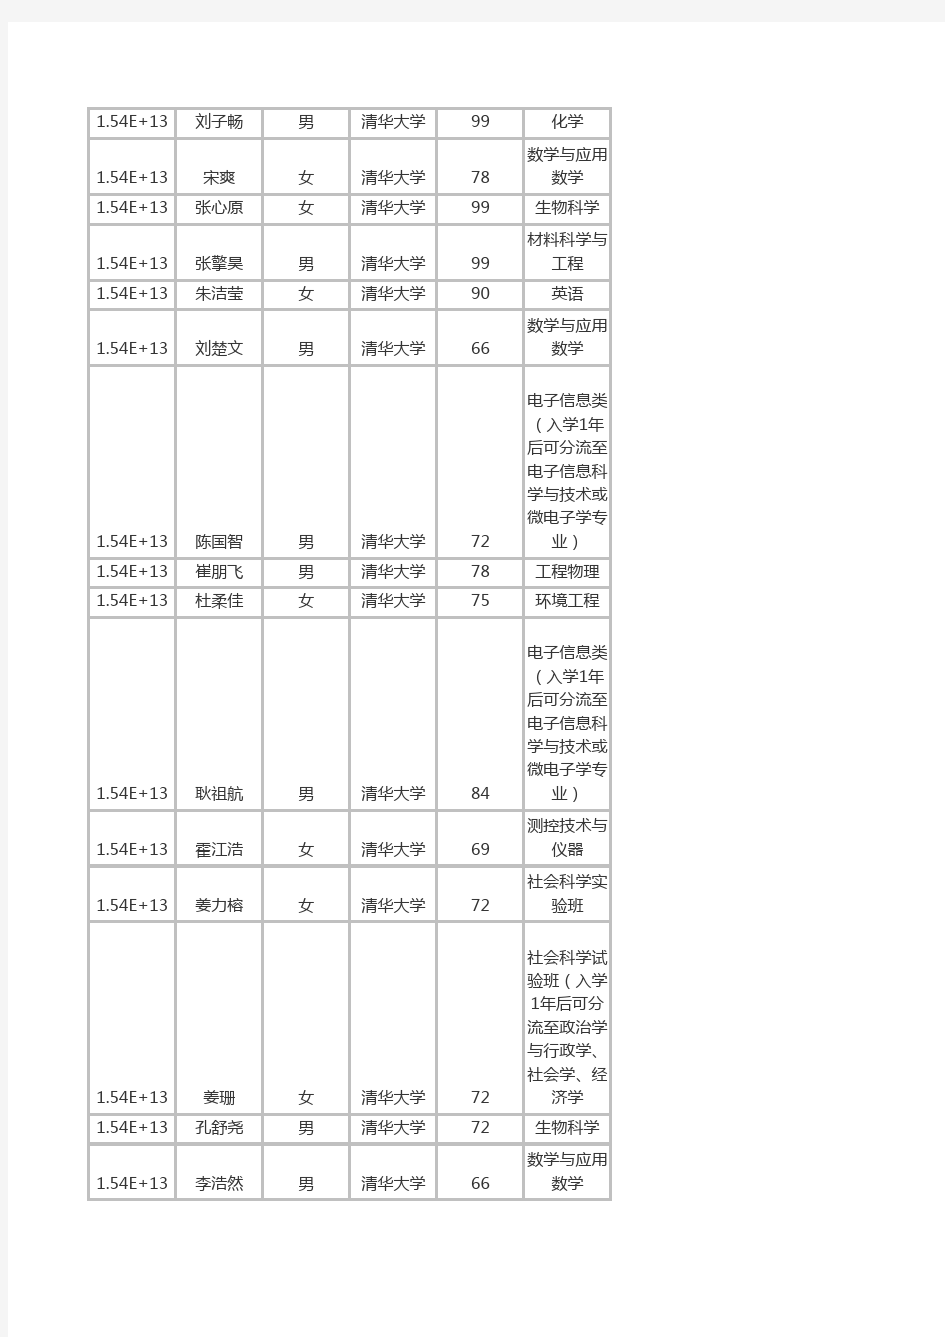 2015年山东省自主招生考试清华大学录取考生名单公示